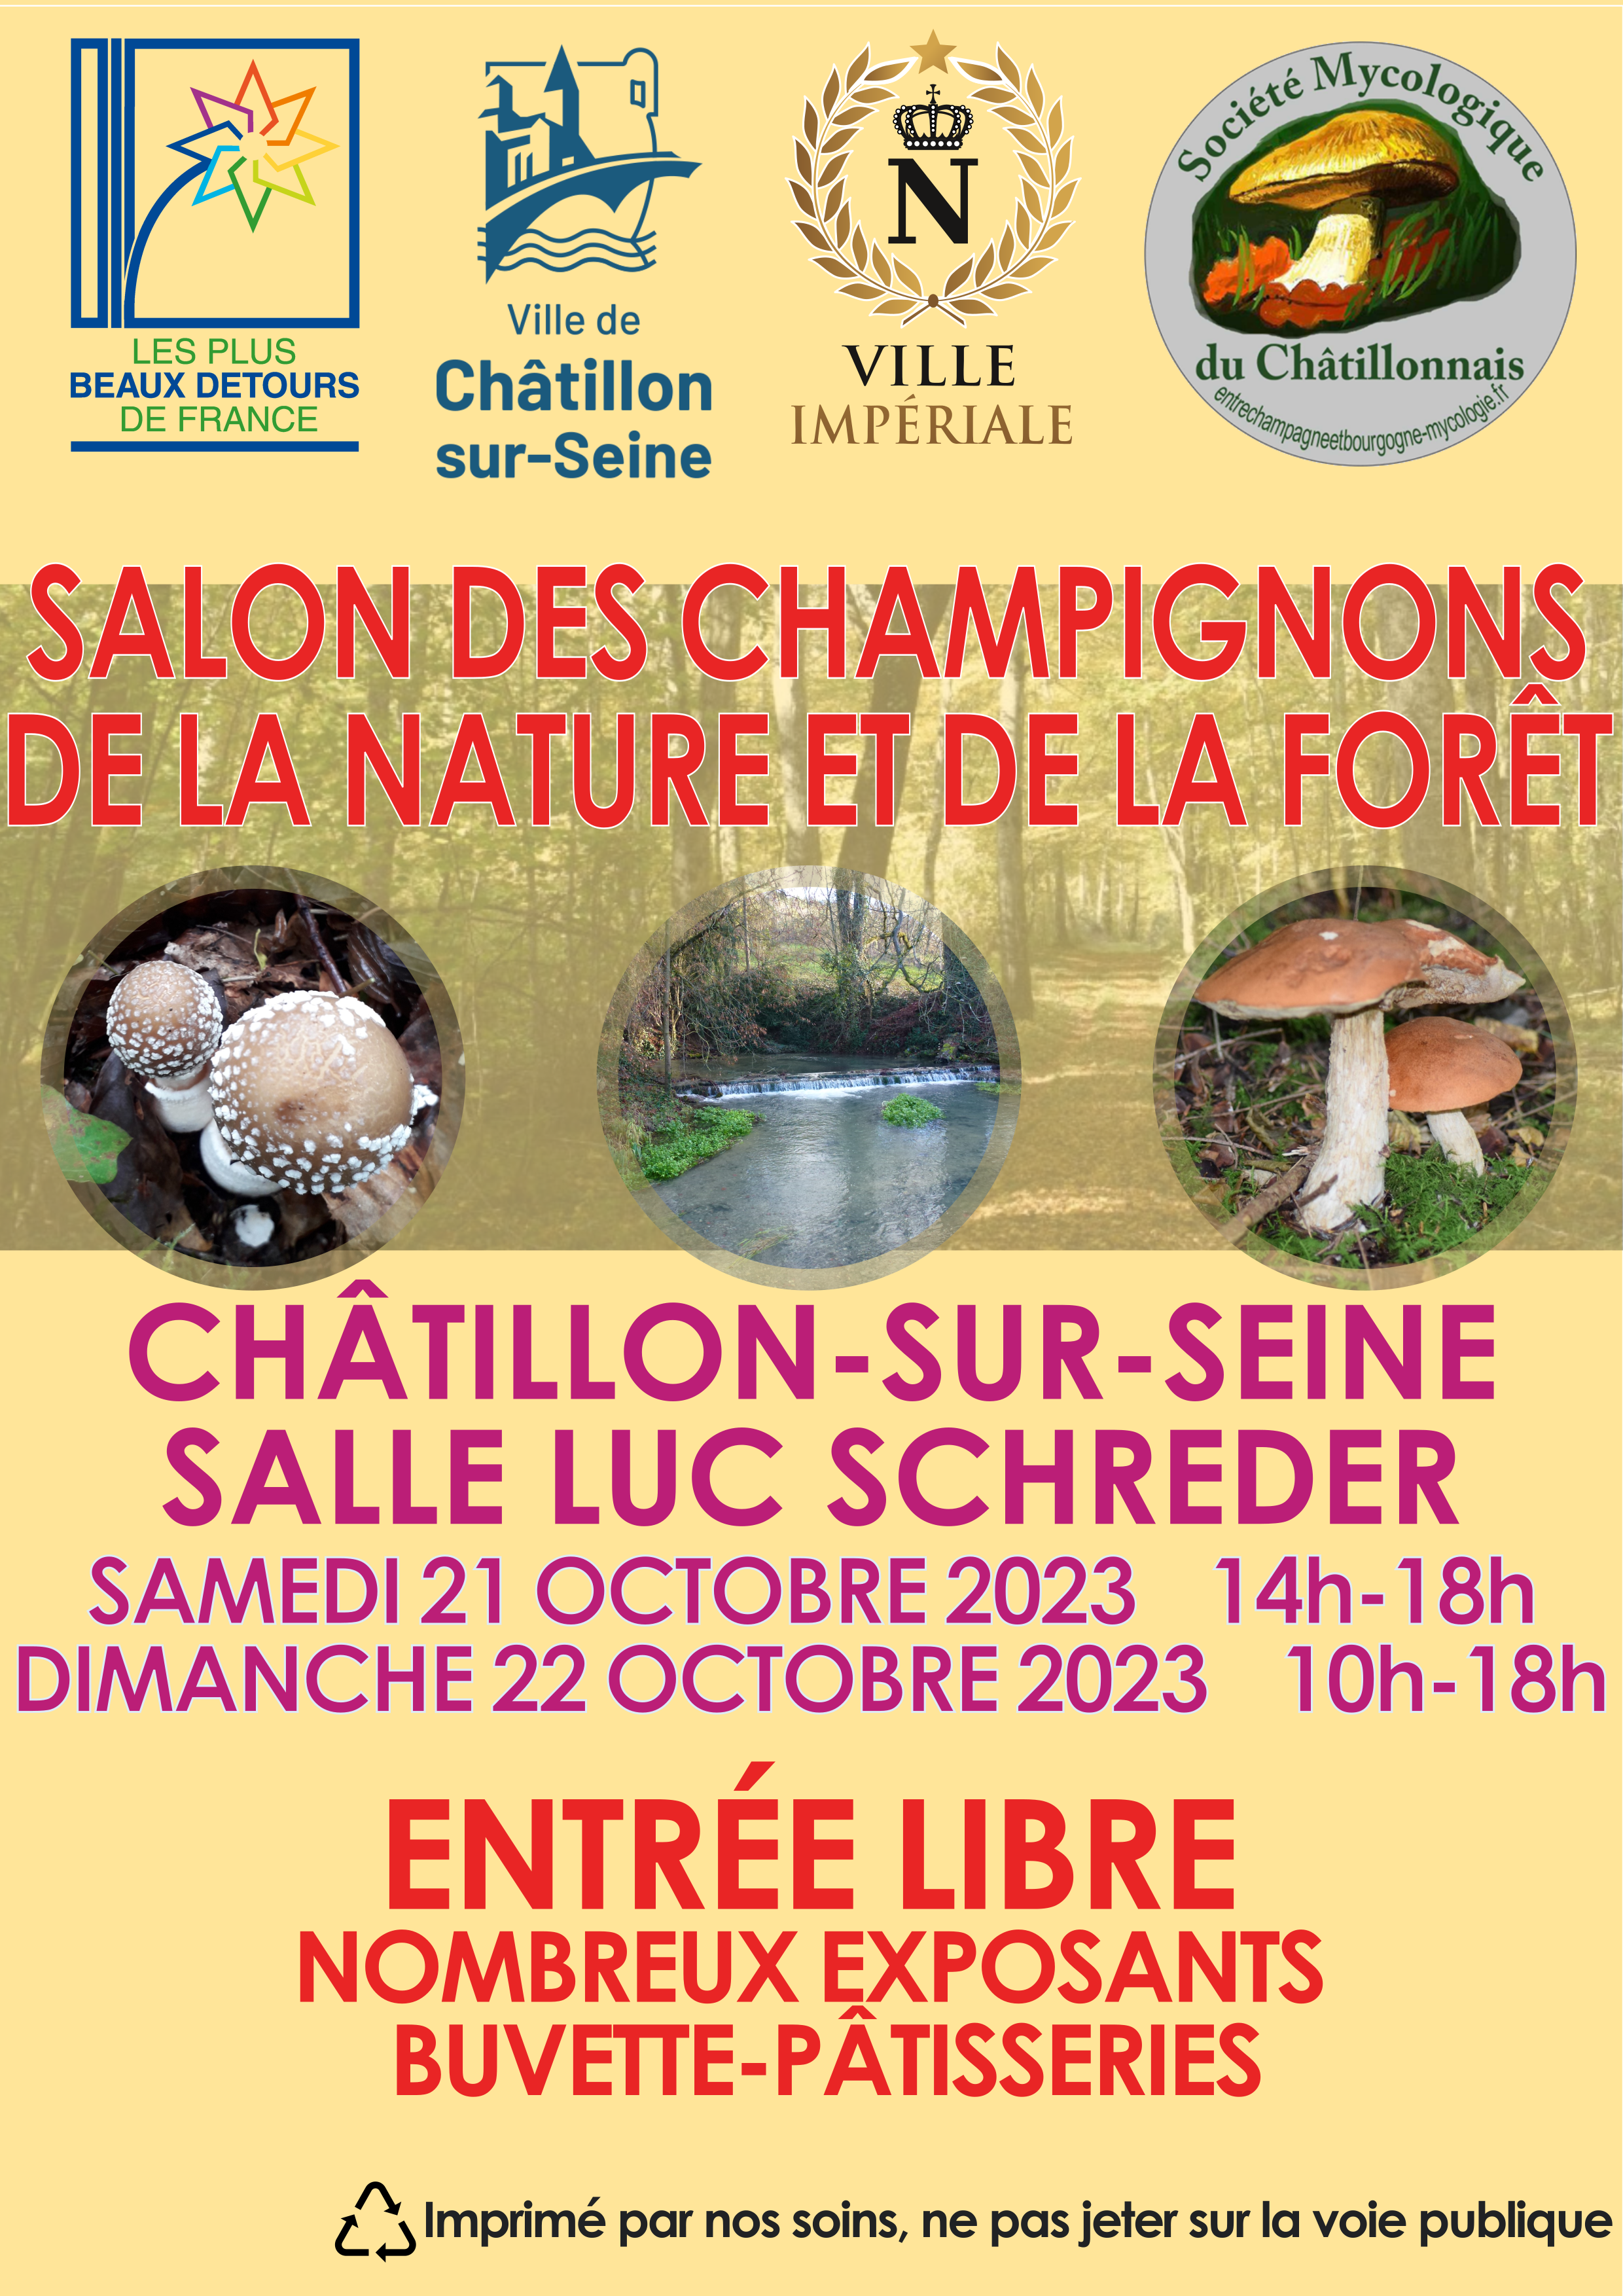 Exposition mycologique Chatillon-sur-Seine 2023 - Fond orange et source (1) - Crédits : SMC